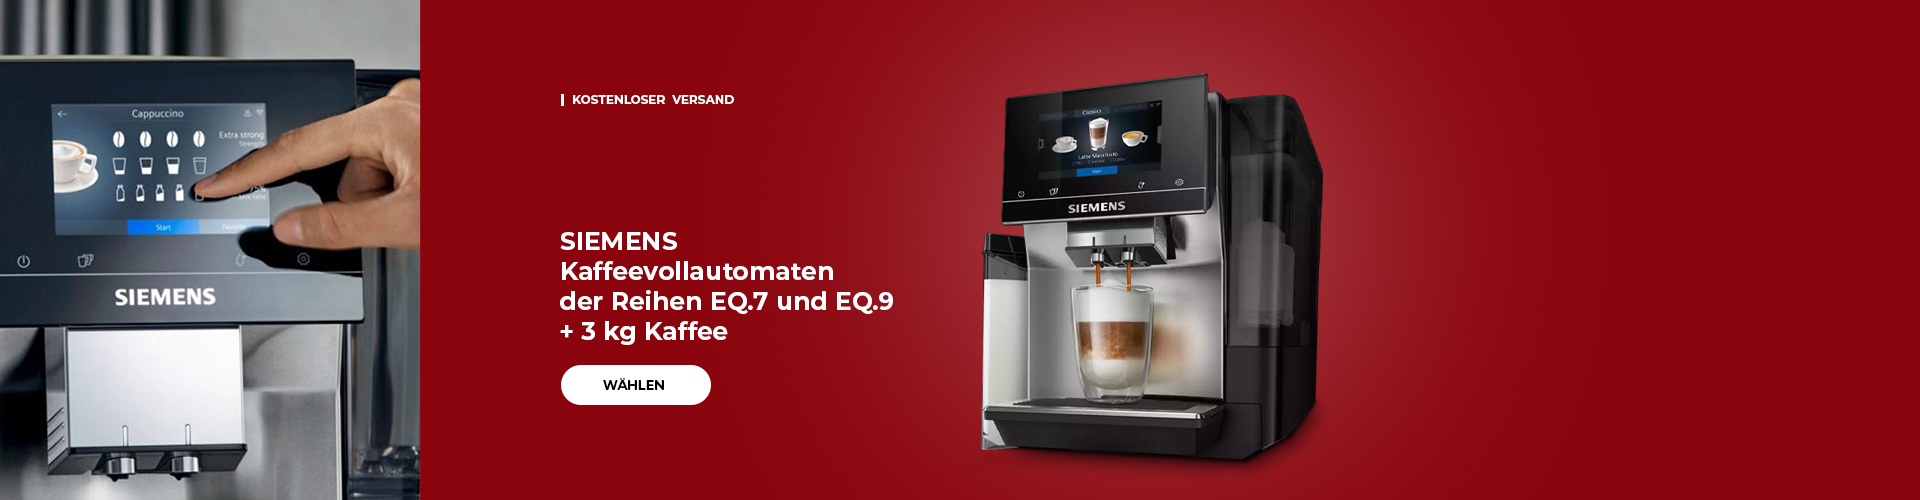 SIEMENS Kaffeevollautomaten der Reihen EQ.7 und EQ.9 + 3 kg Kaffee